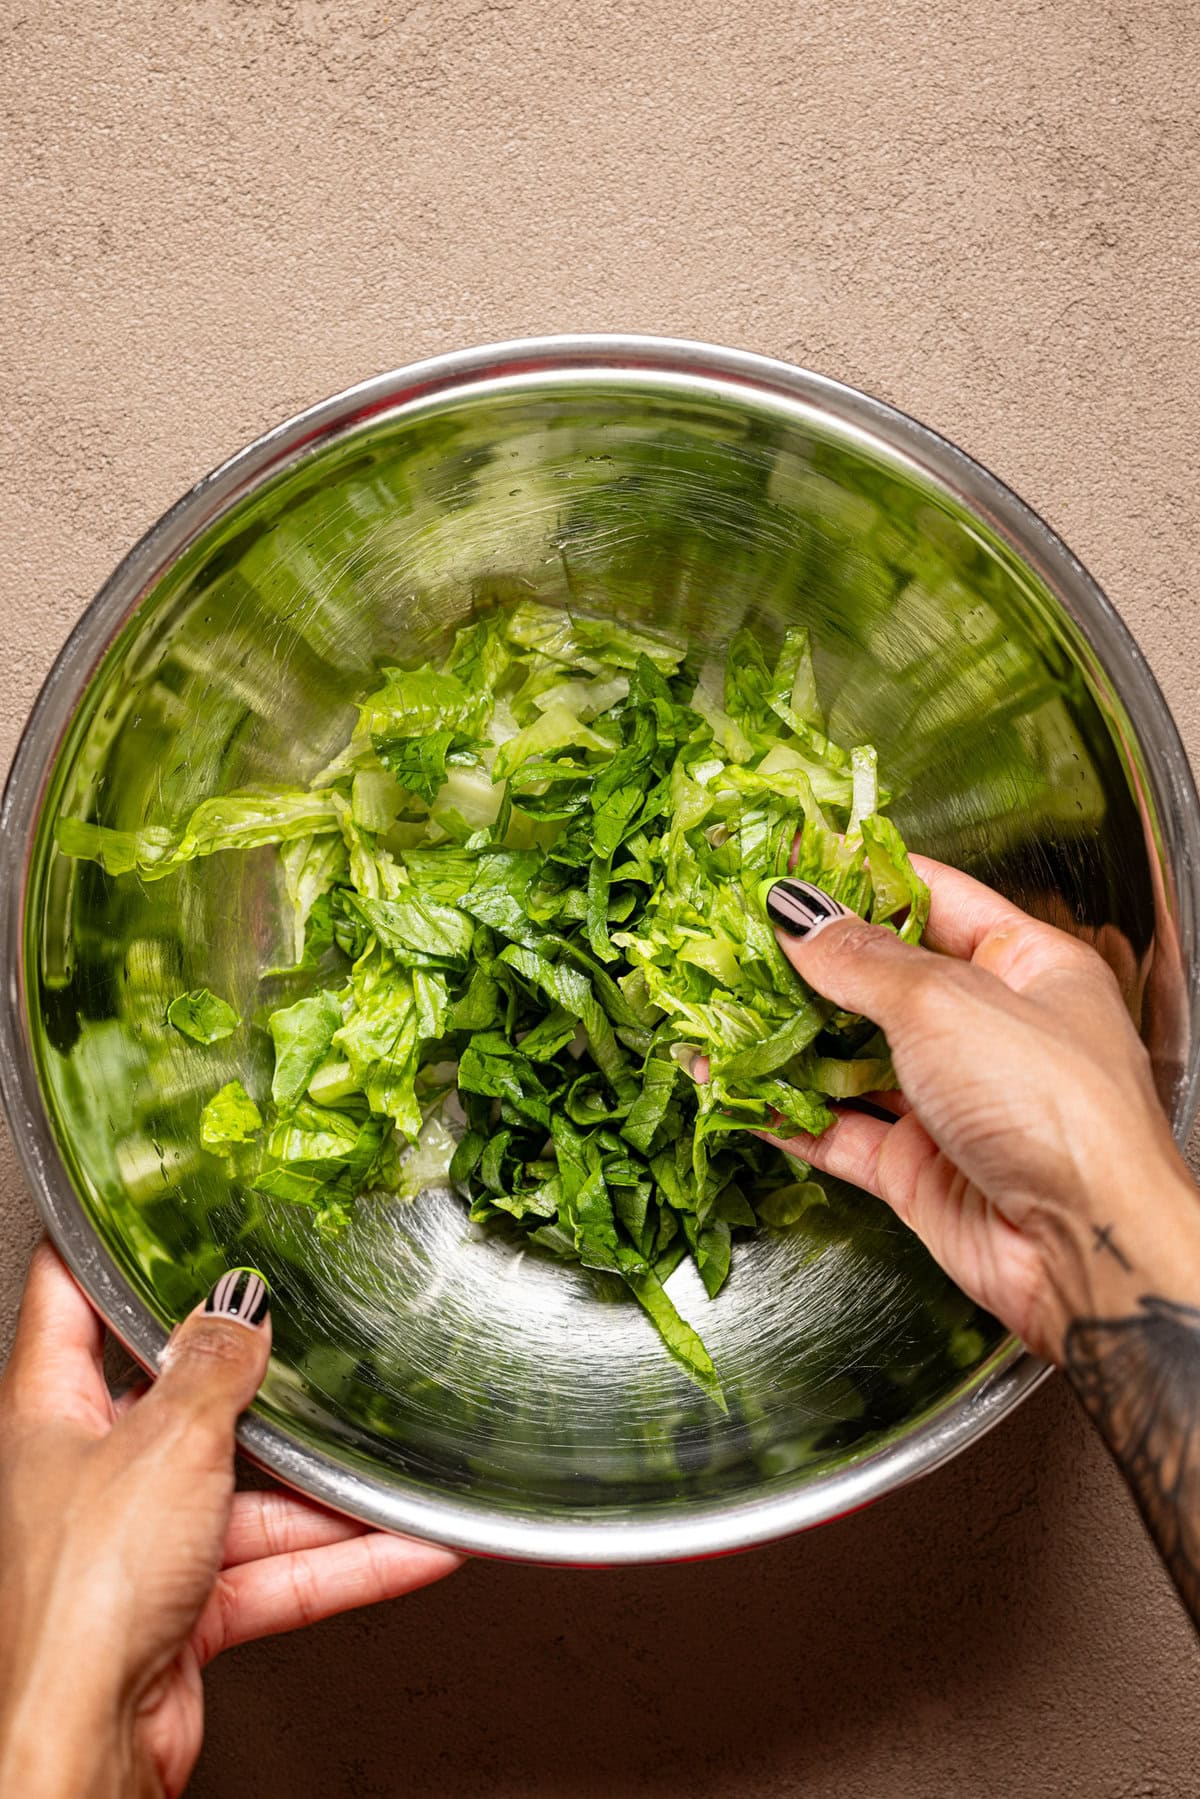 Shredded lettuce in a metal bowl being held.